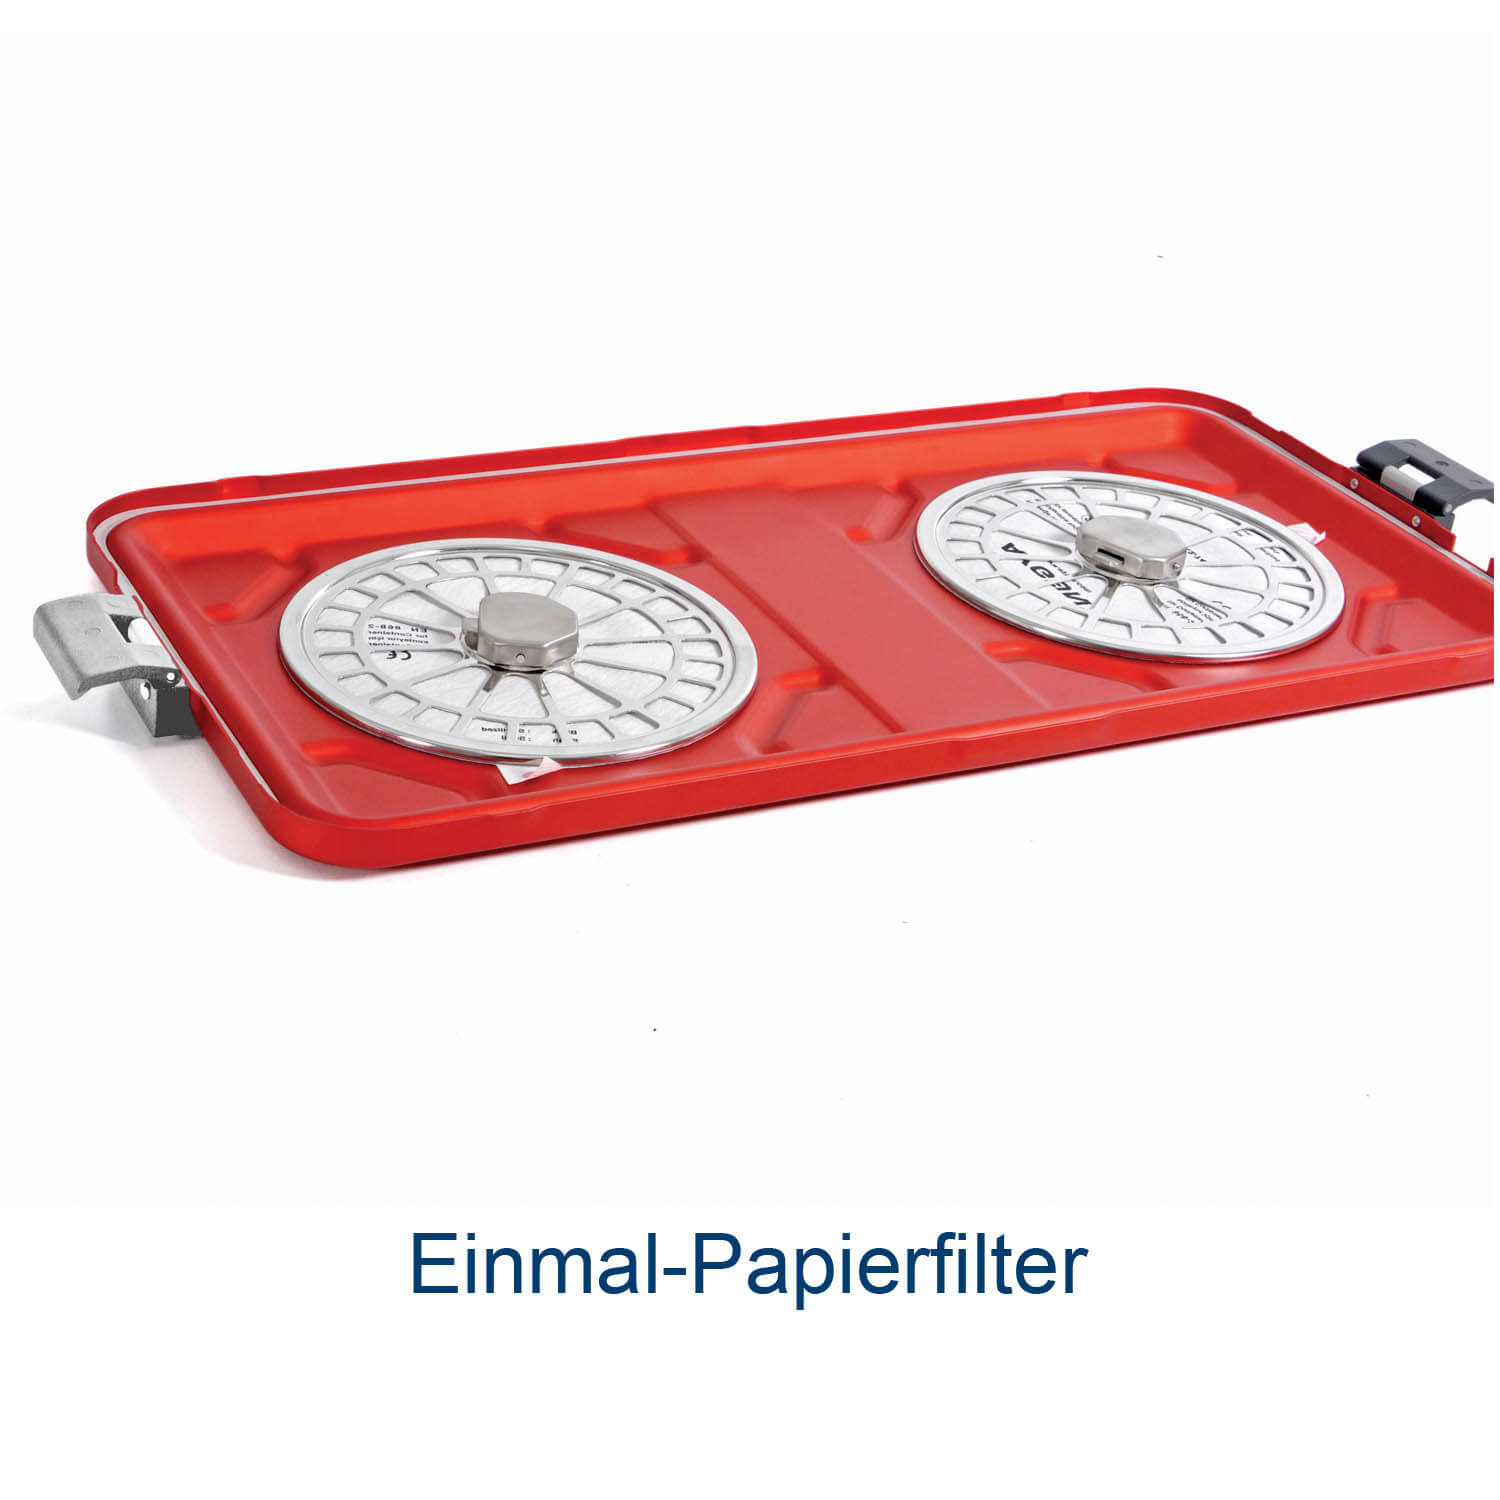 Einmal-Papierfilter_container_asanus_DE